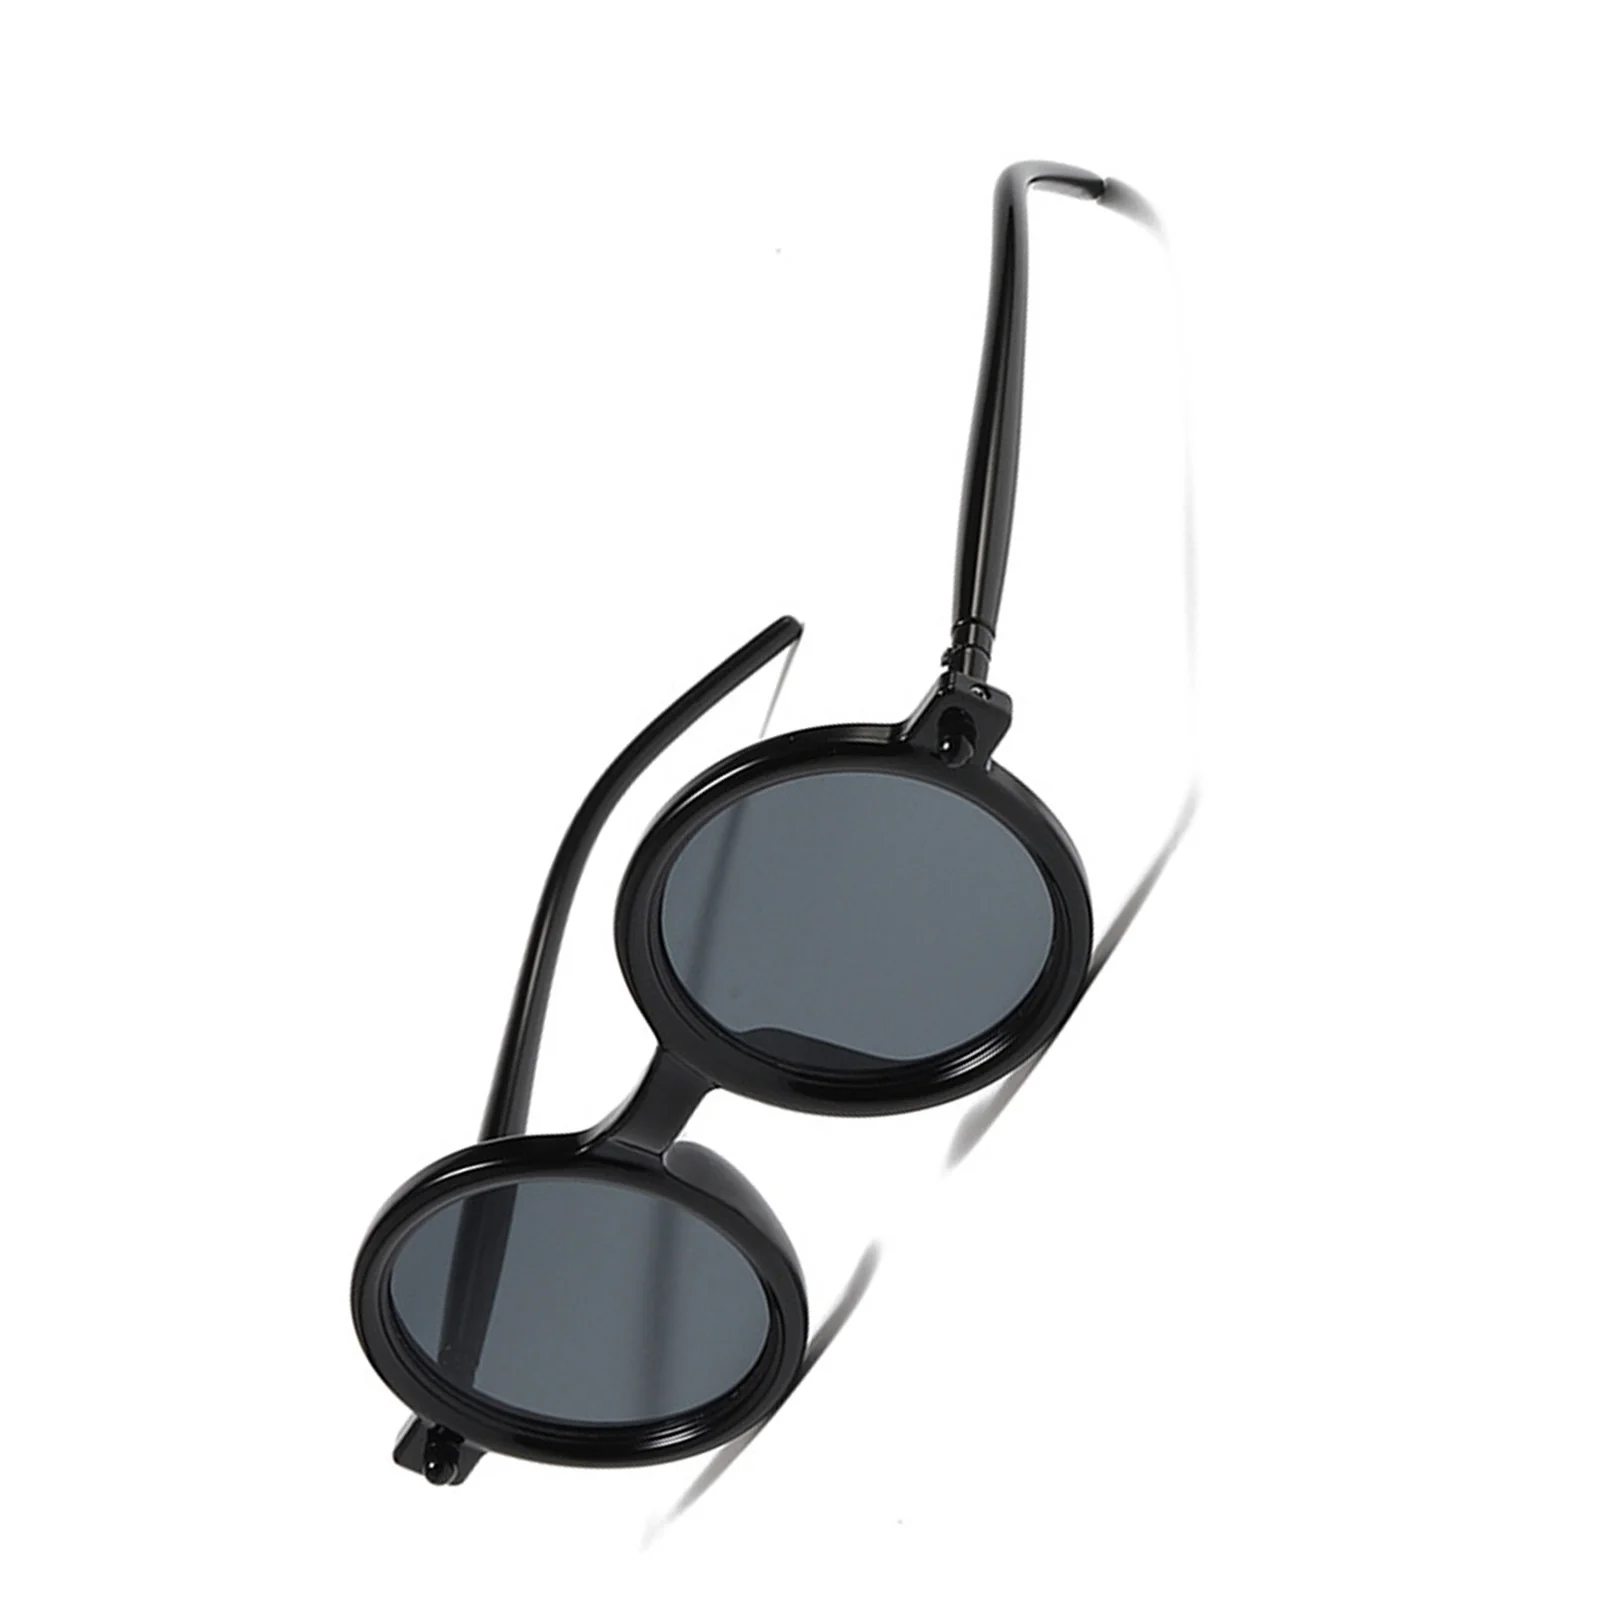 Модные солнцезащитные очки для уличной съемки в маленькой круглой оправе с прозрачными линзами, декоративные солнцезащитные очки для отдыха, повседневной носки, вождения автомобиля